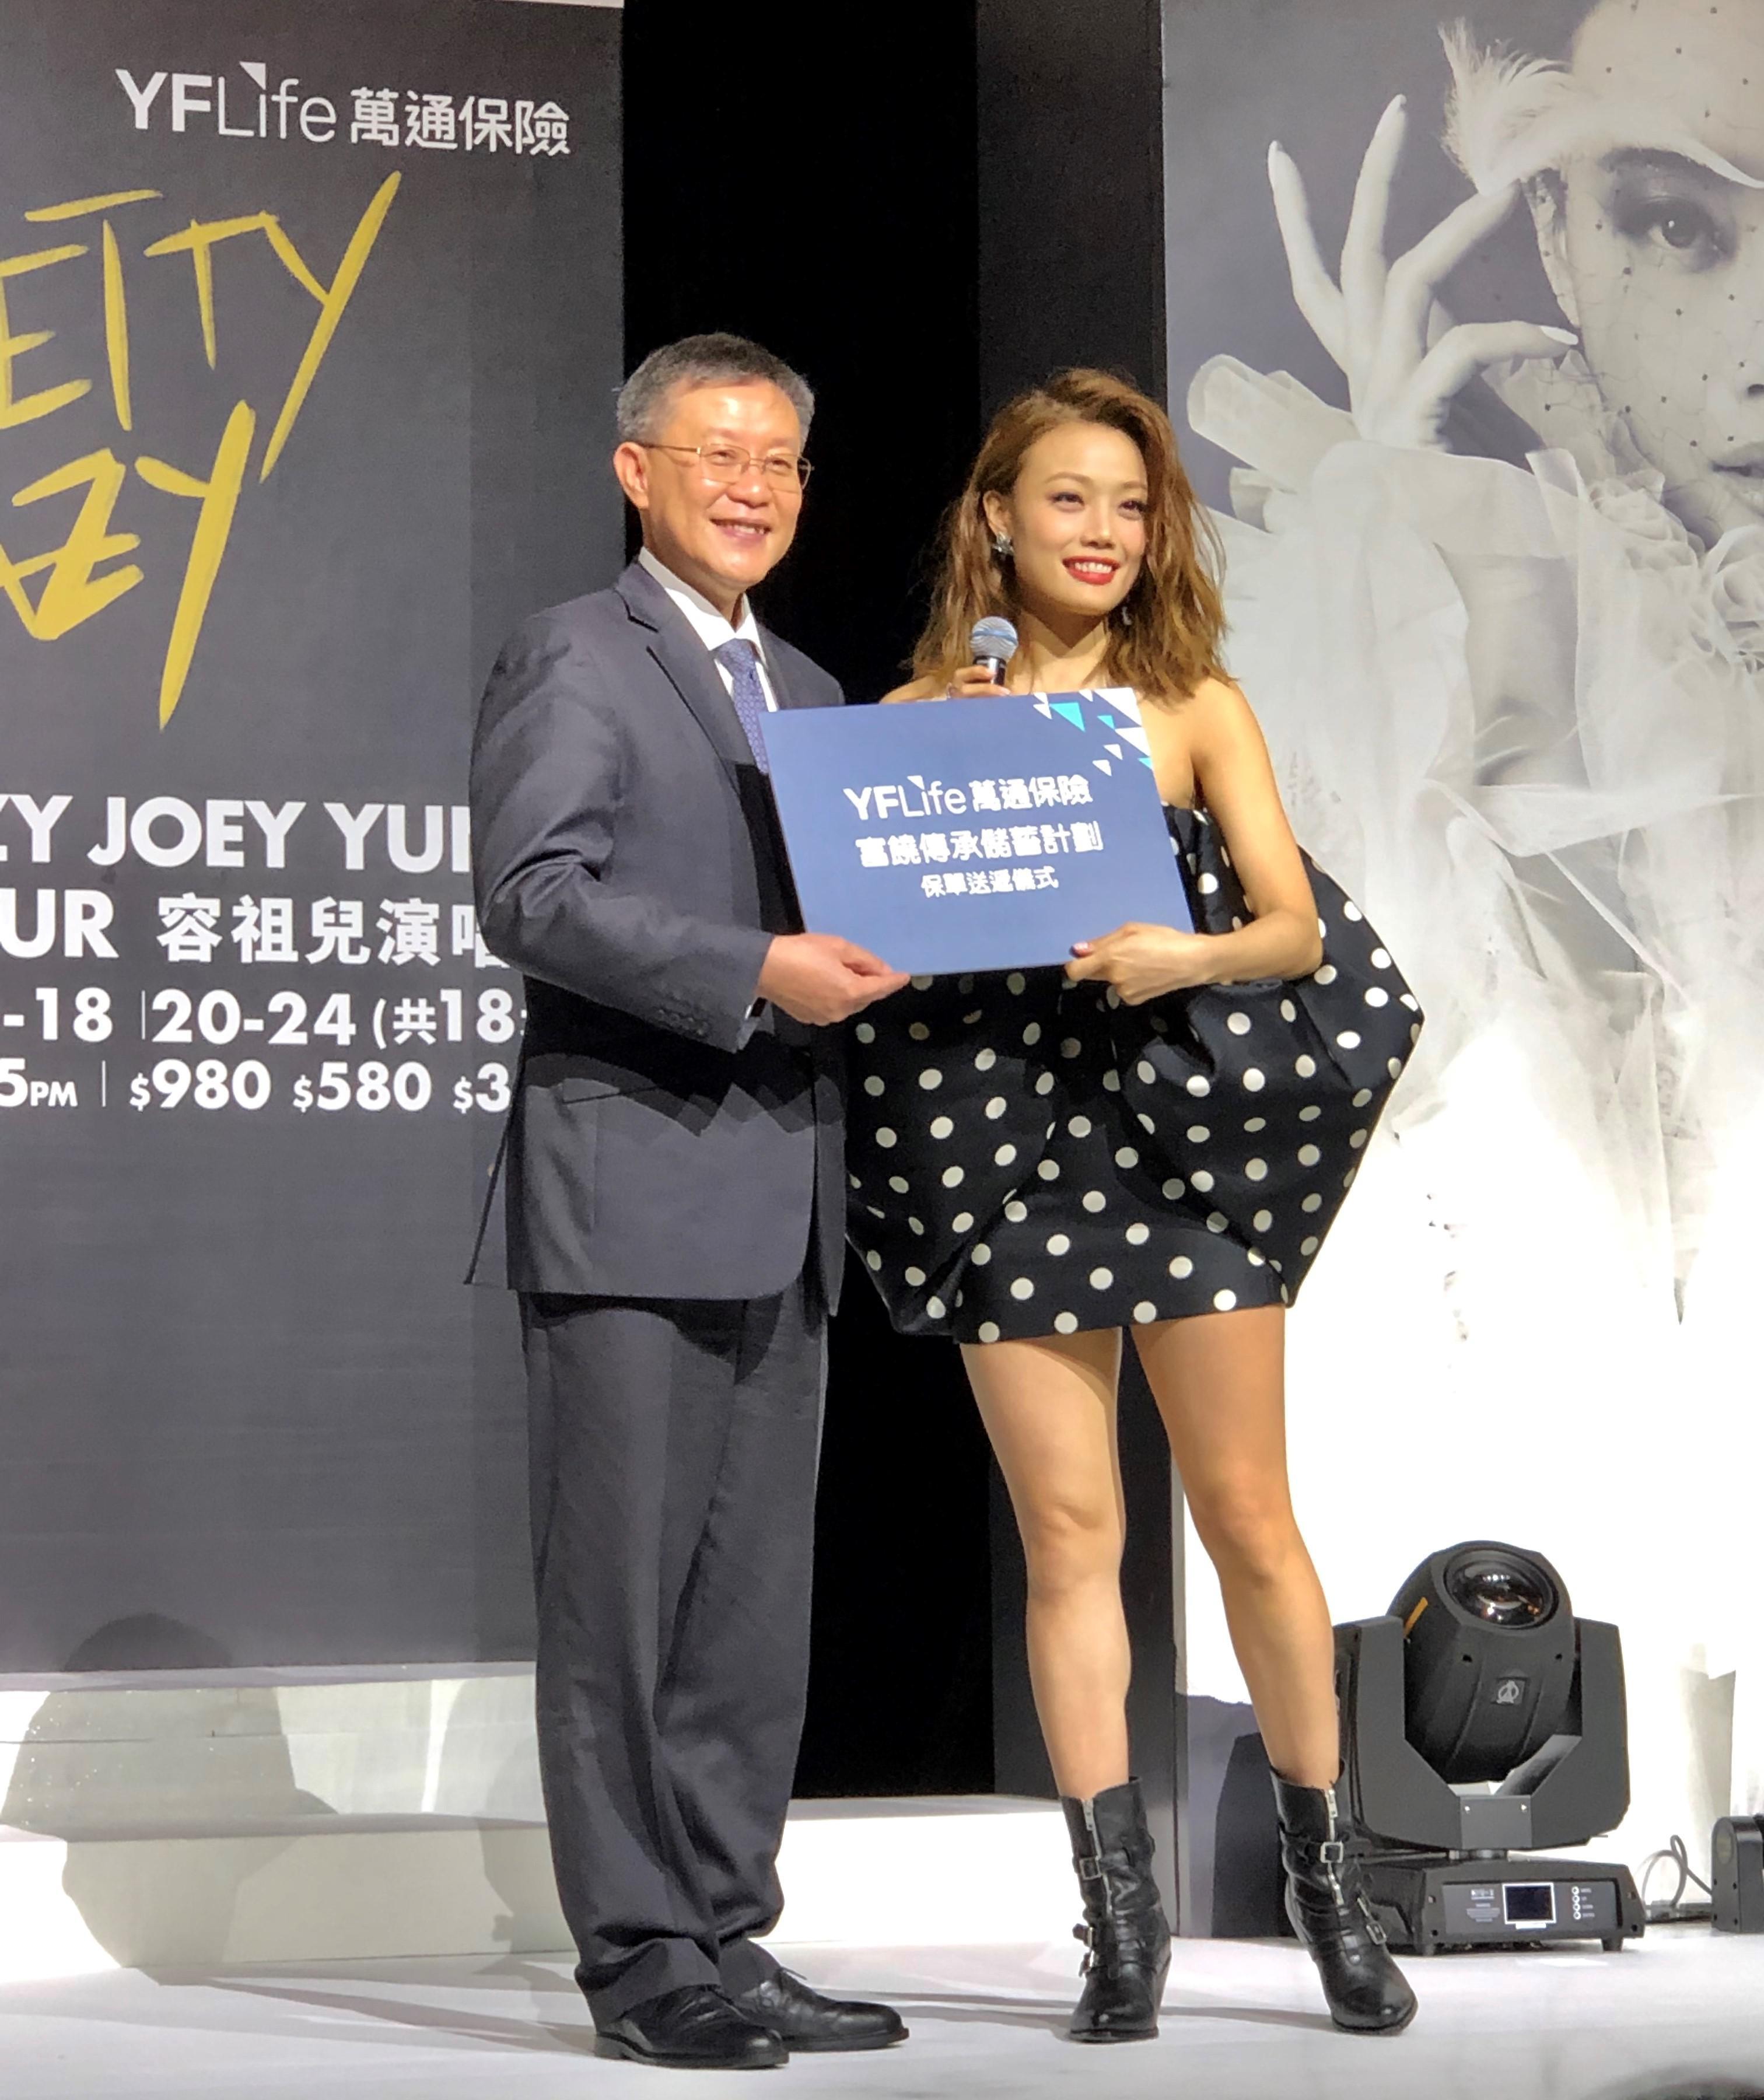 万通保险常务董事兼总裁郑庆藩先生为Joey送上一份「富饶传承储蓄计划」保单，祝贺她入行20周年和预祝其演唱会得到空前成功。